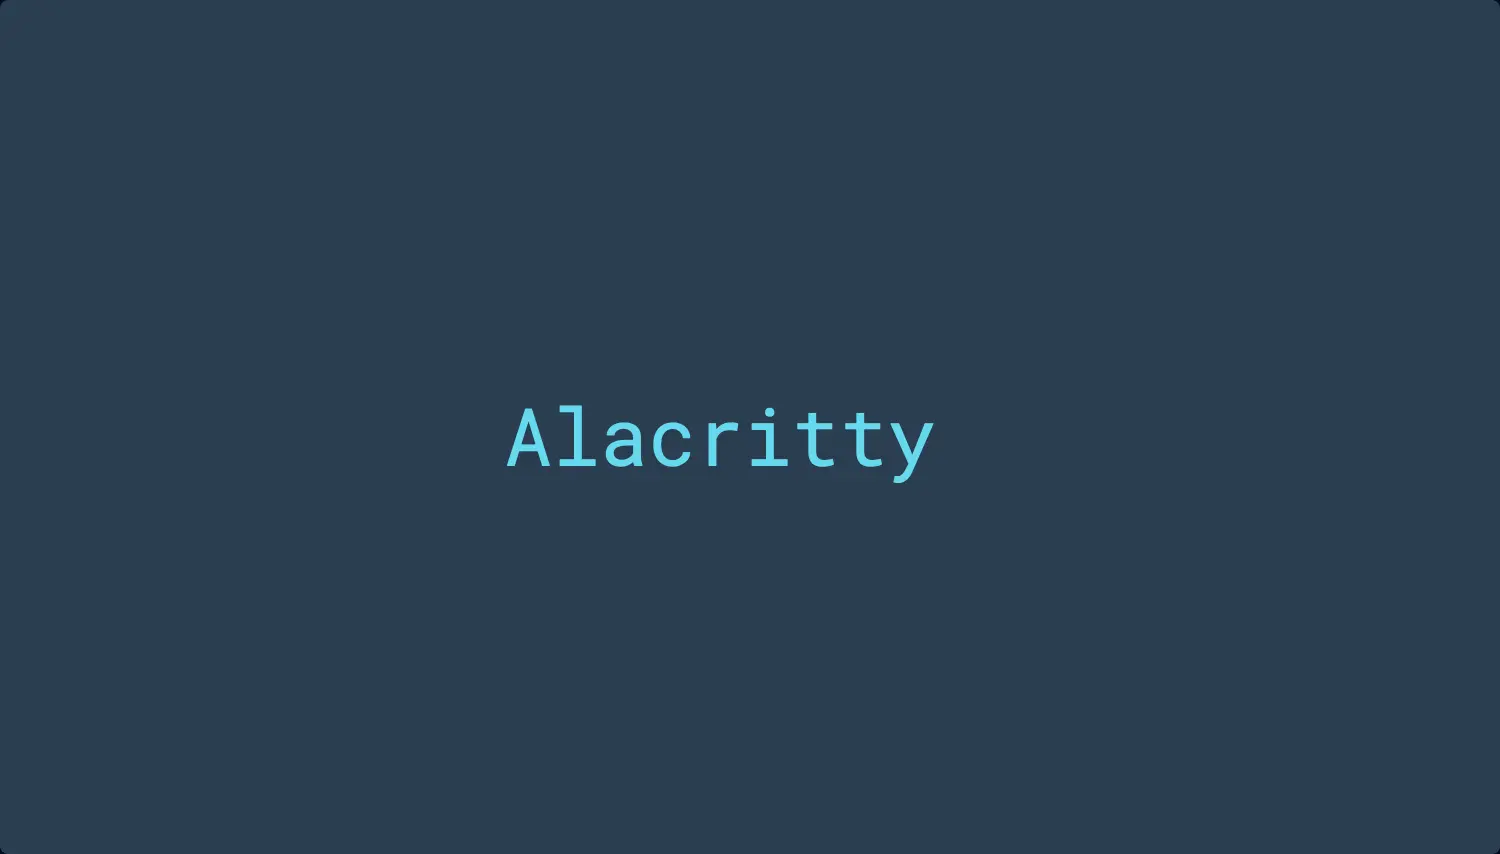 Alacritty